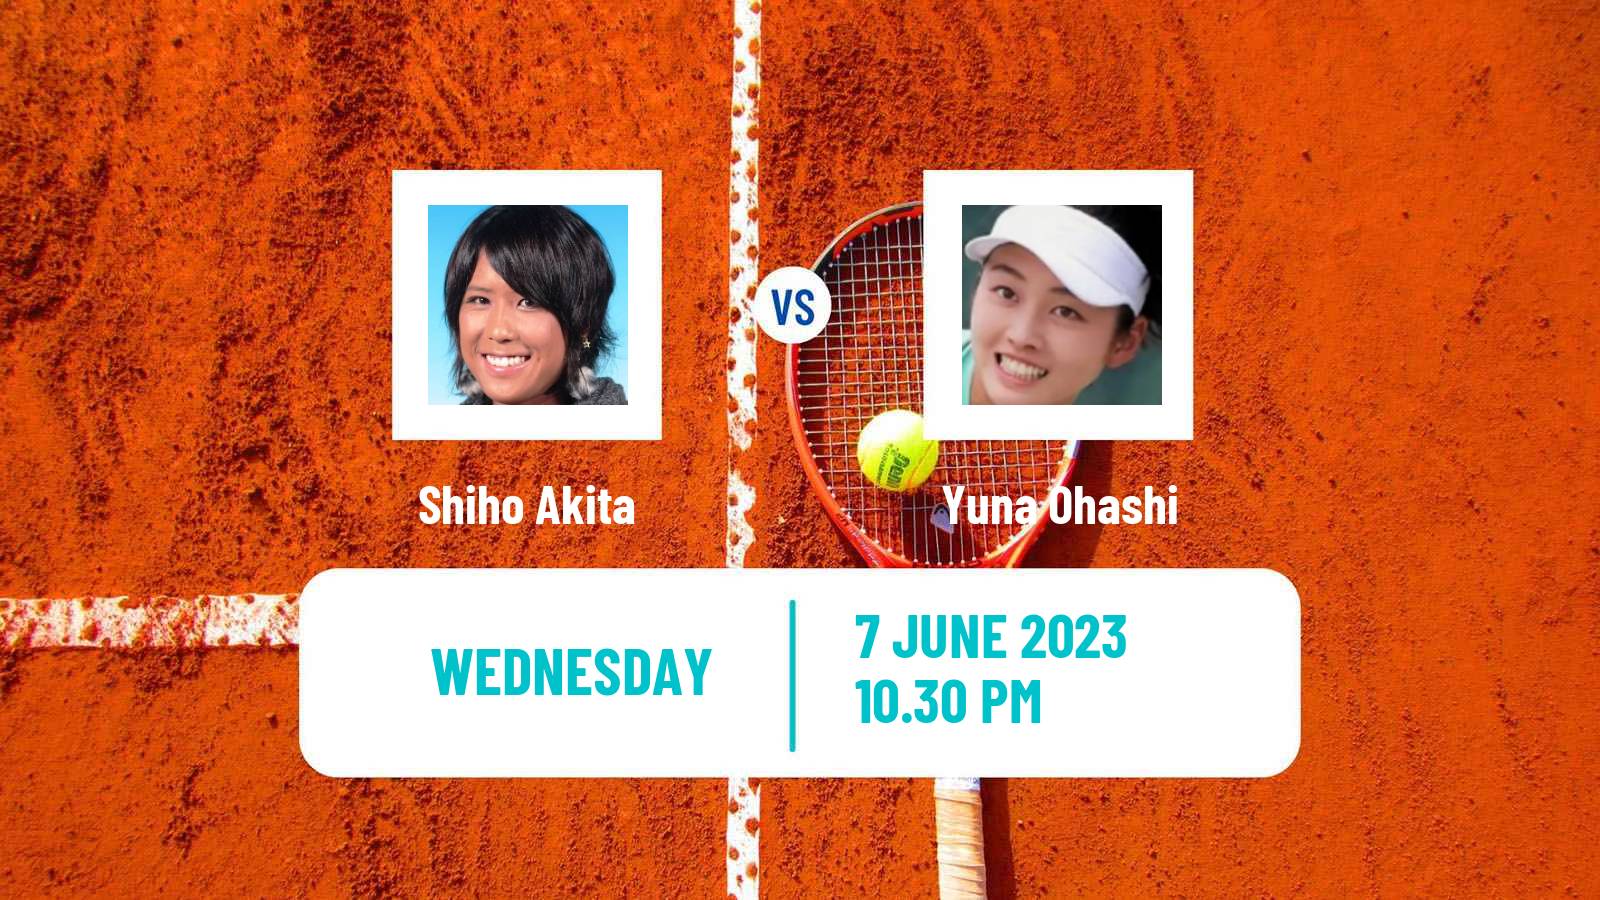 Tennis ITF W15 Kashiwa Women Shiho Akita - Yuna Ohashi